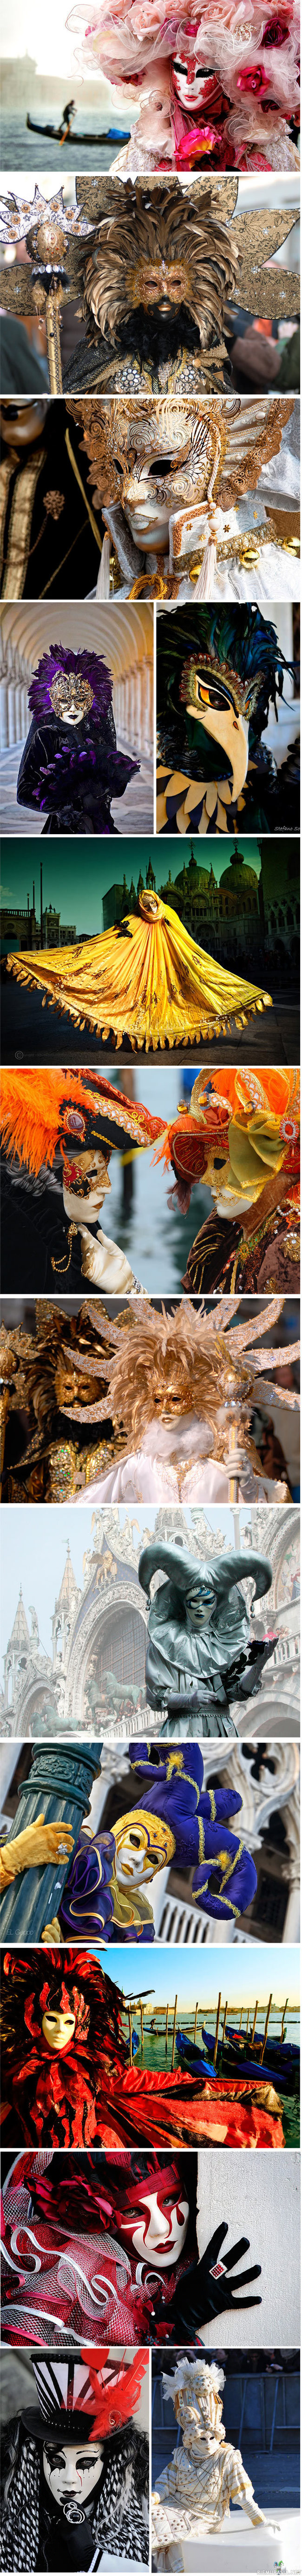 Venetsian naamiokarnevaalin asuja - Venetsian karnevaali (Carnevale di Venezia) on yksi tunnetuimmista ja suosituimmista tapahtumista Venetsiassa, Italiassa. Karnevaali houkuttelee Venetsiaan paljon matkailijoita. Tarkka turistien määrä näinä päivinä Venetsiassa kukaan ei tiedä, mutta uskotaan, että karnevaalin aikana kaupungissa vierailee kolme miljoonaa ihmistä.